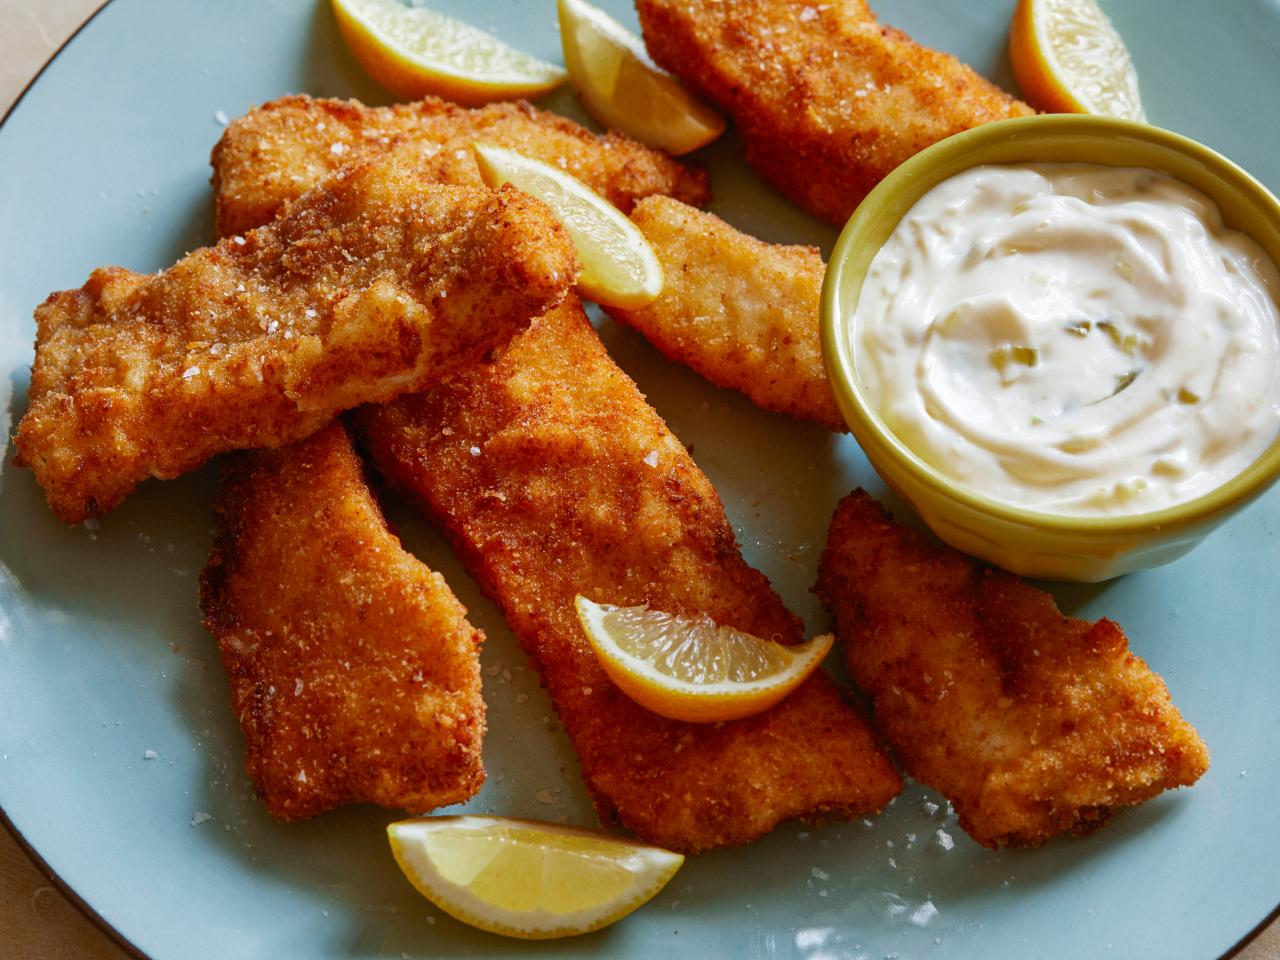 Rachel Ray's Fish Fry recipe. 